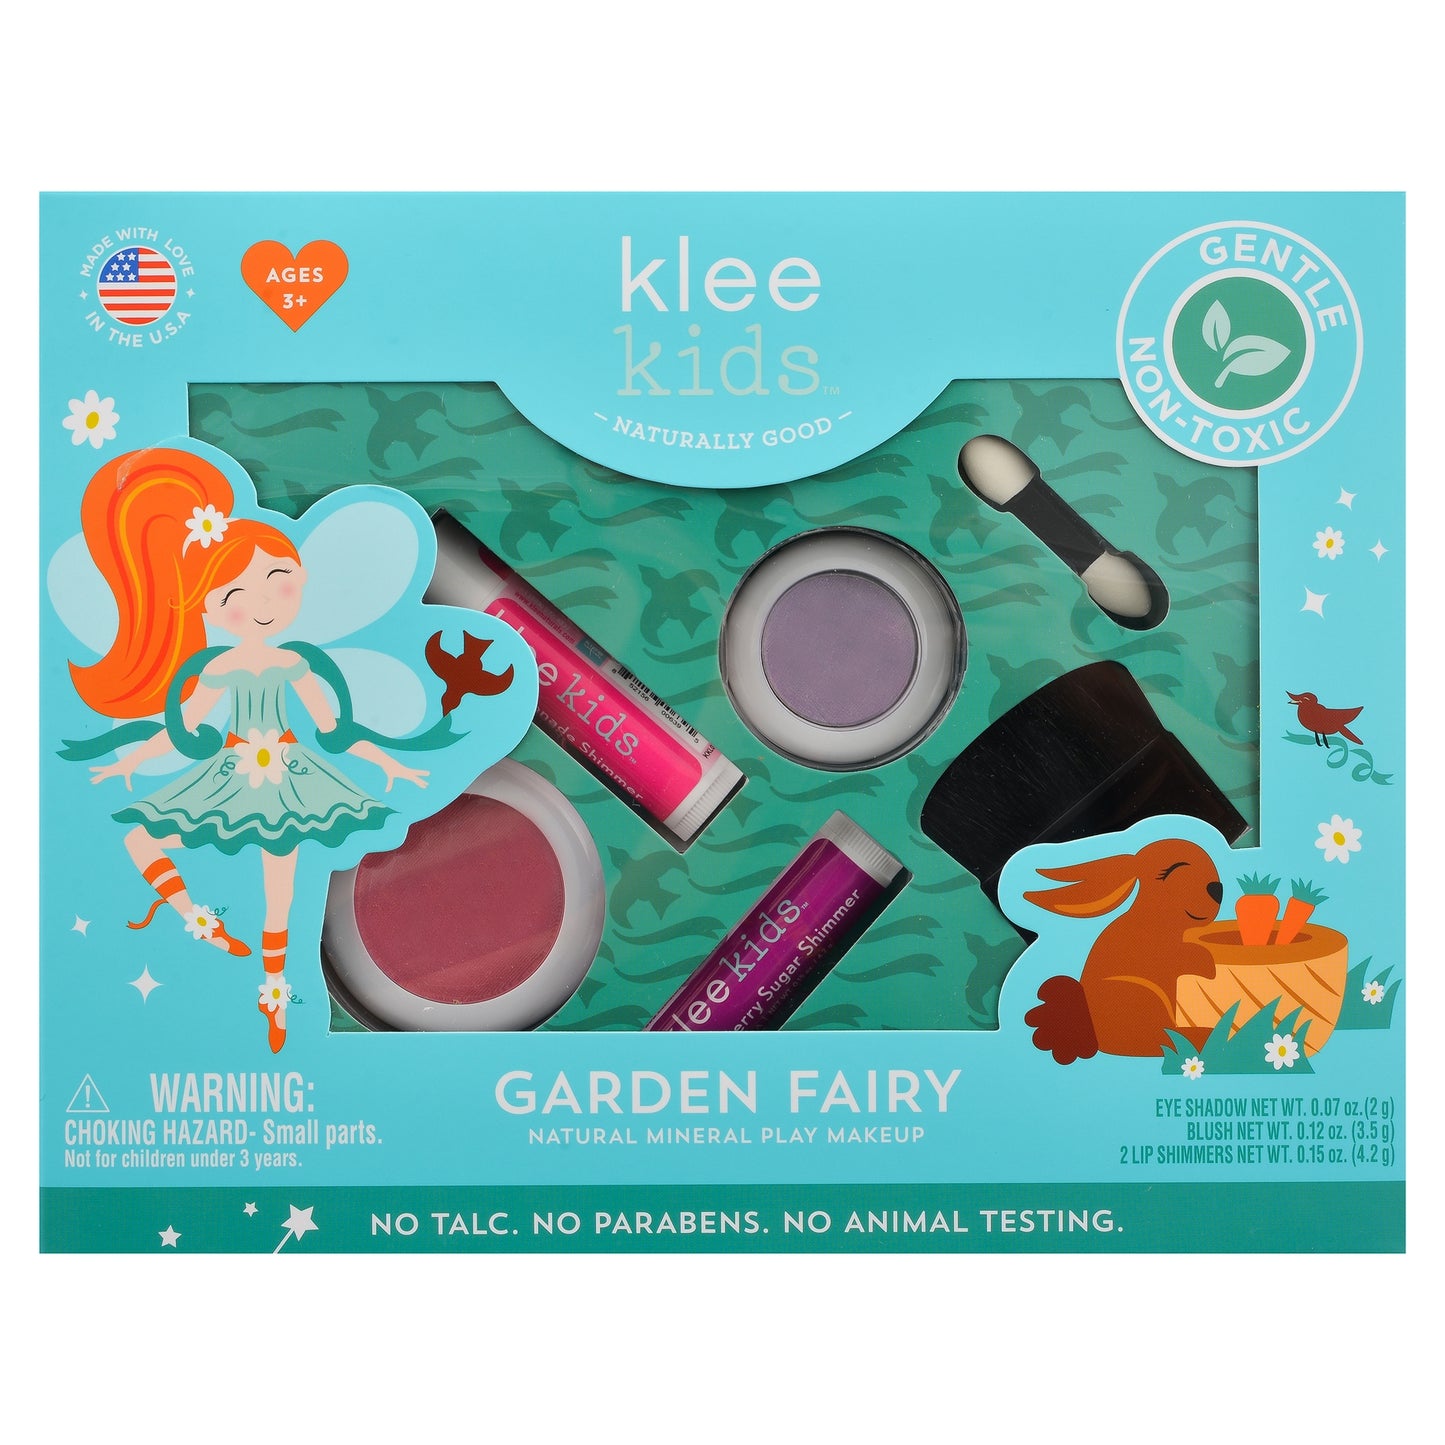 Natural Pretend Play Makeup Kit for Girls Paraben-free, DYE-free